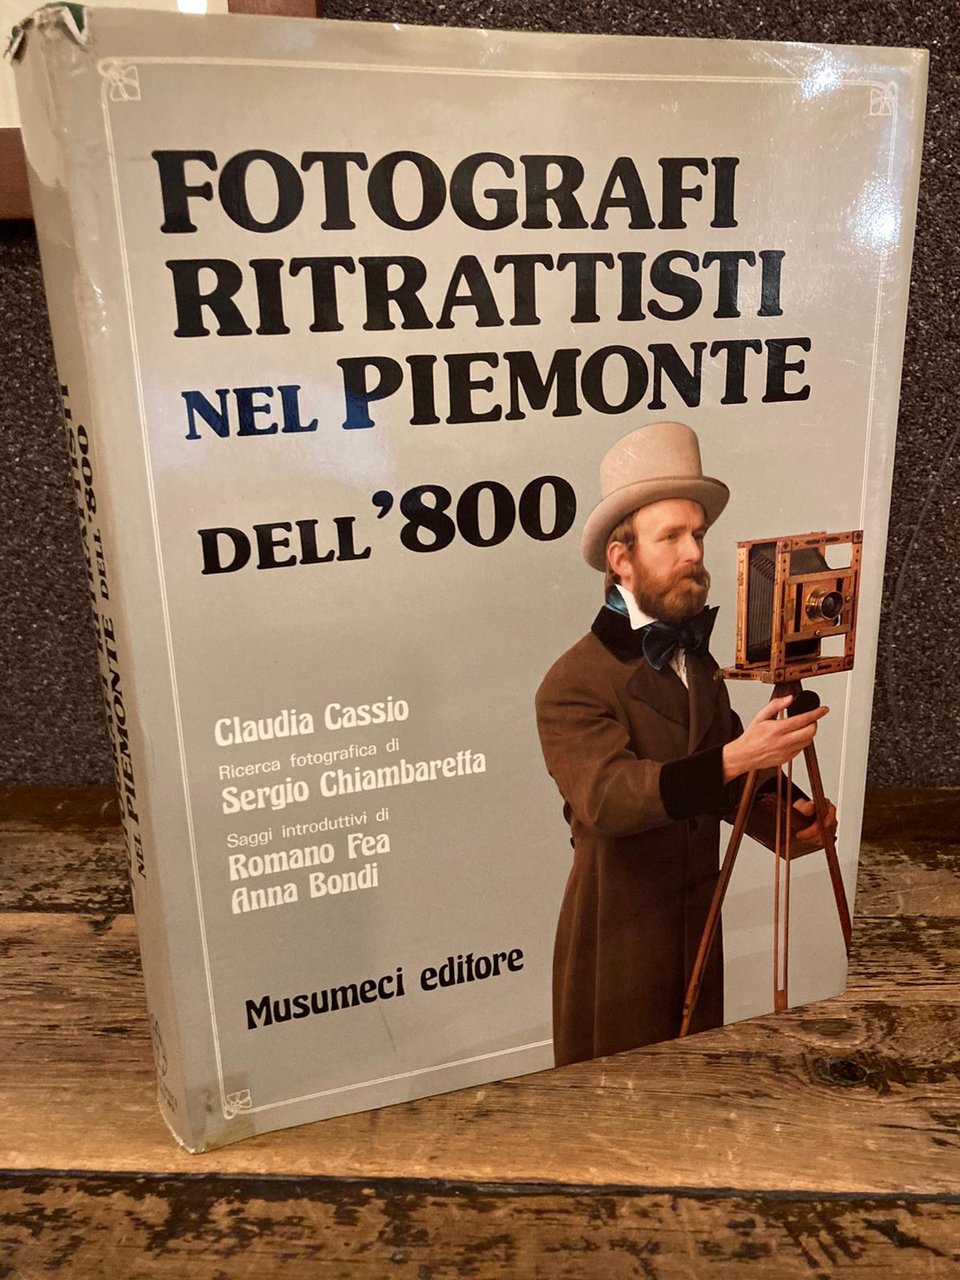 Fotografi ritrattisti nel Piemonte dell'800. Ricerca fotografica di Sergio Chiambaretta. …